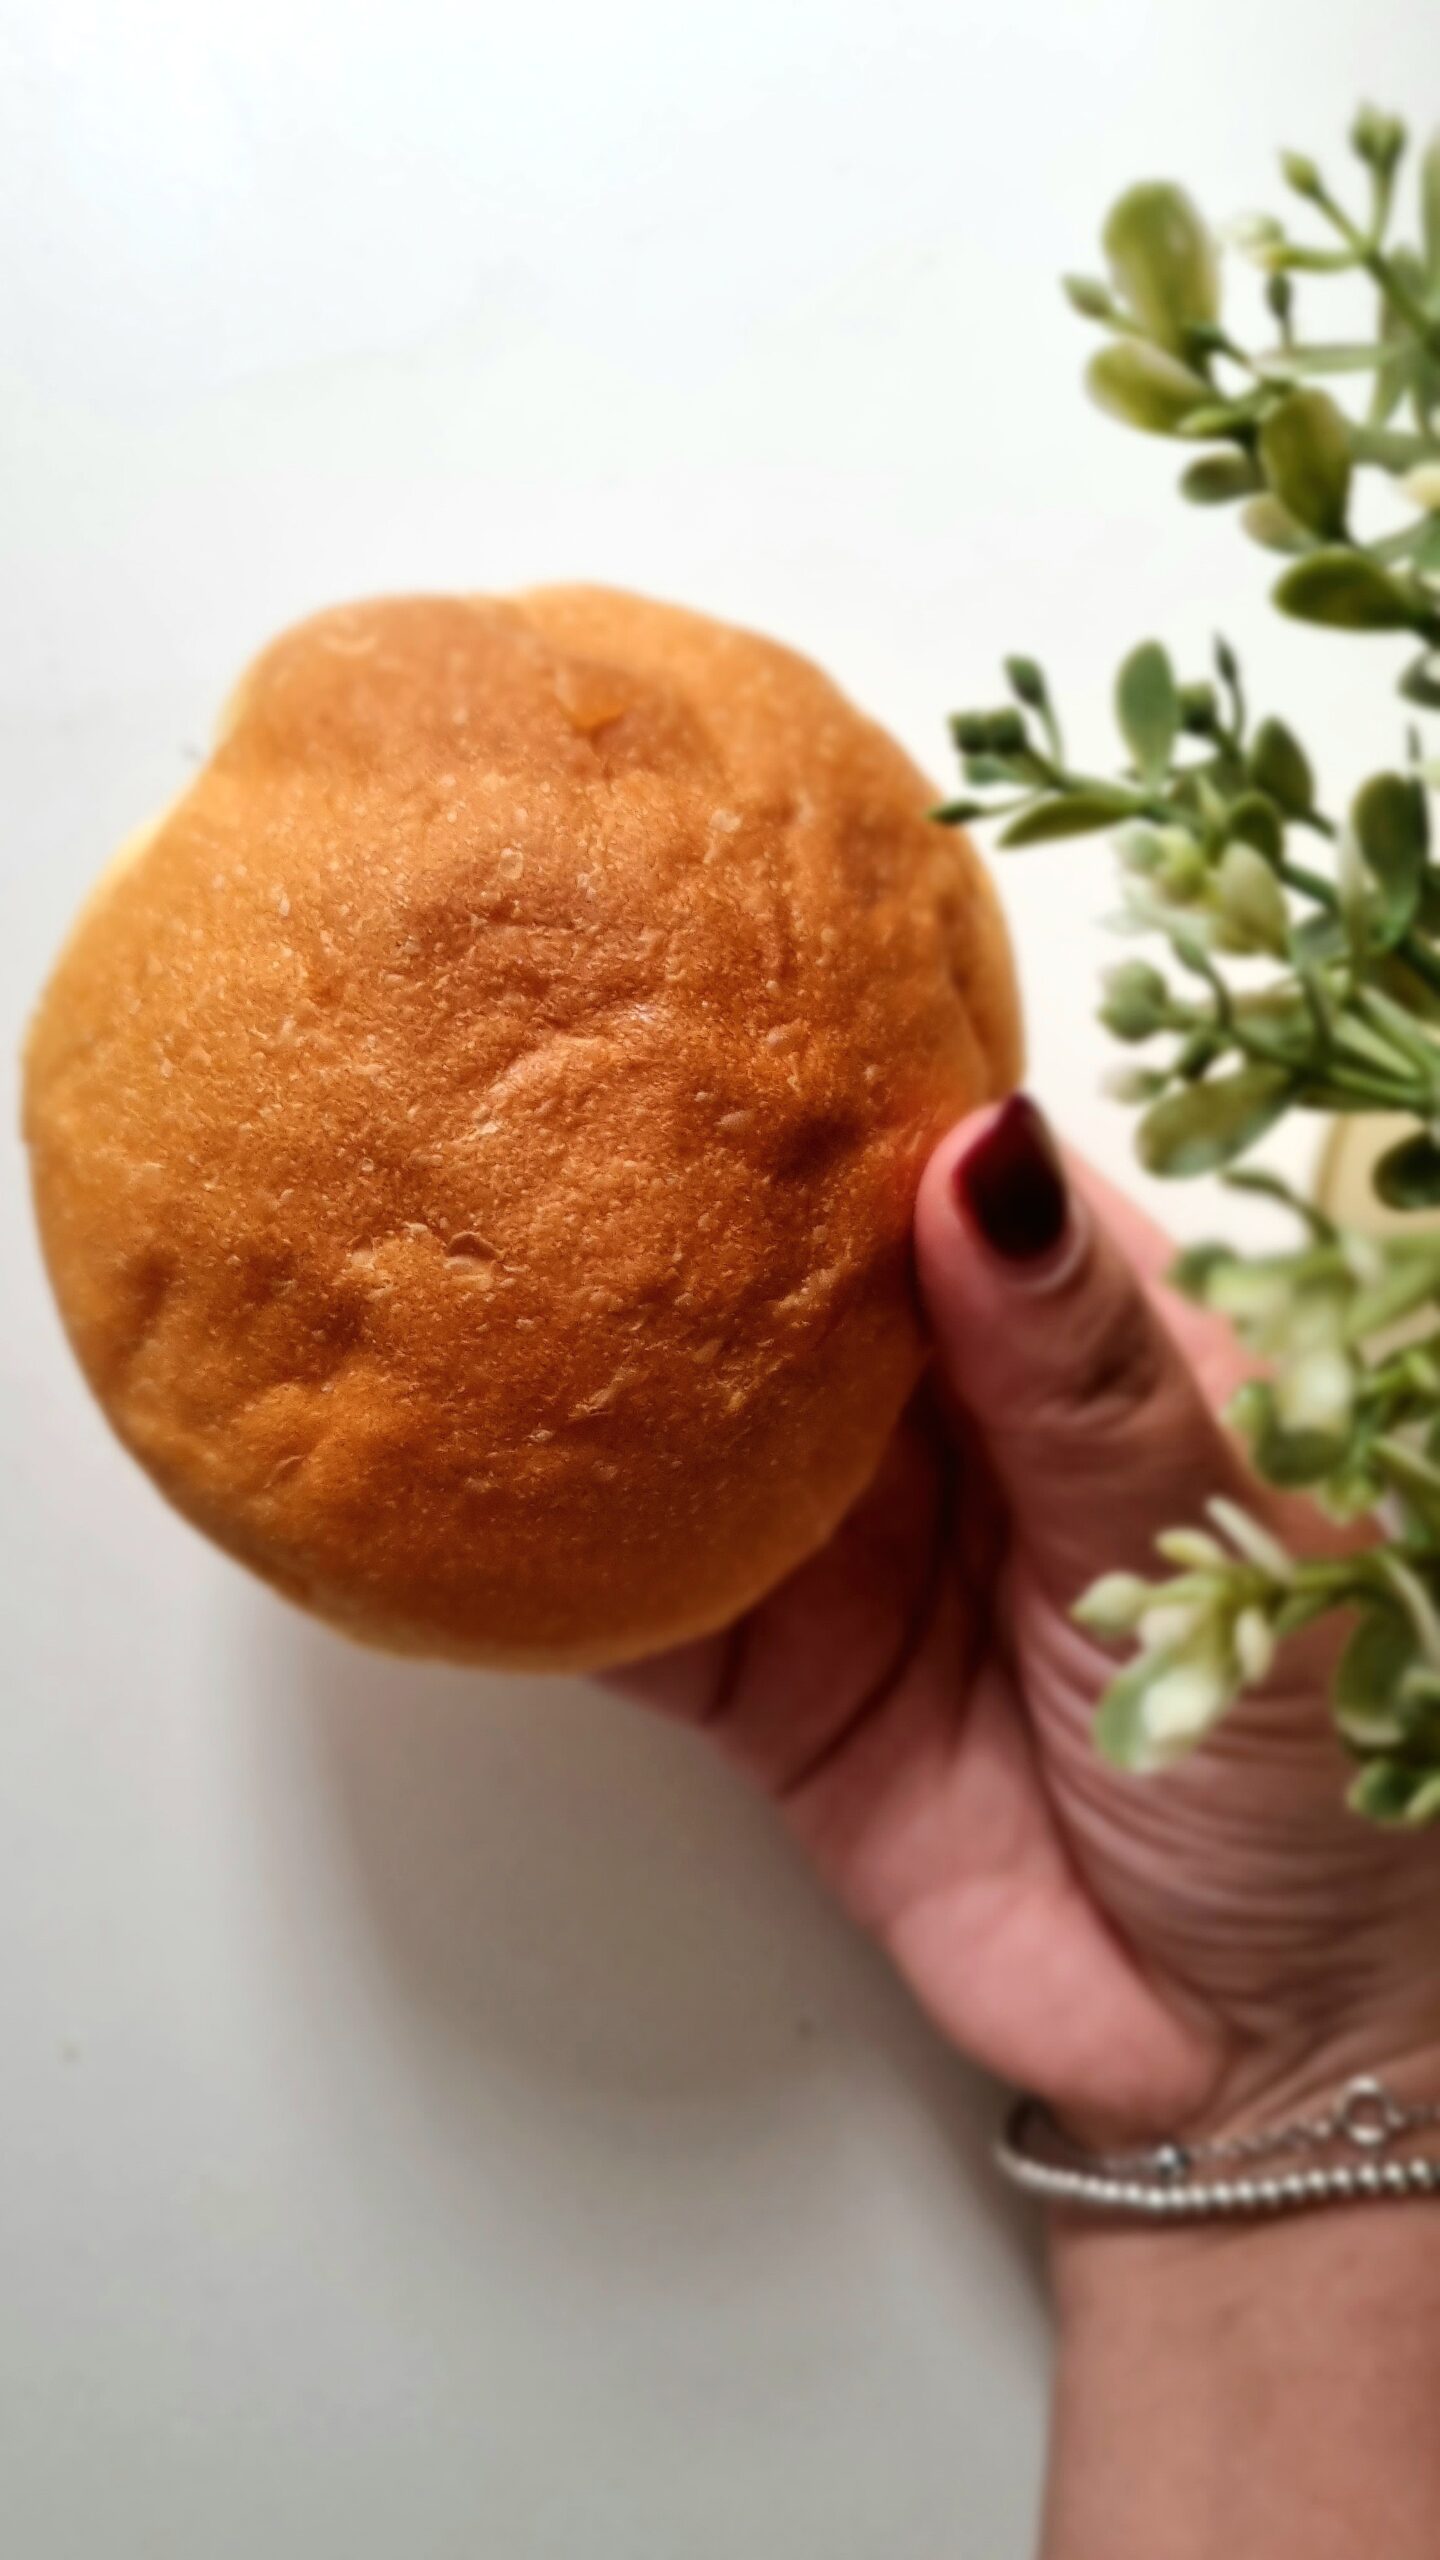 HOKKAIDO MILK BREAD | il pane più soffice del mondo